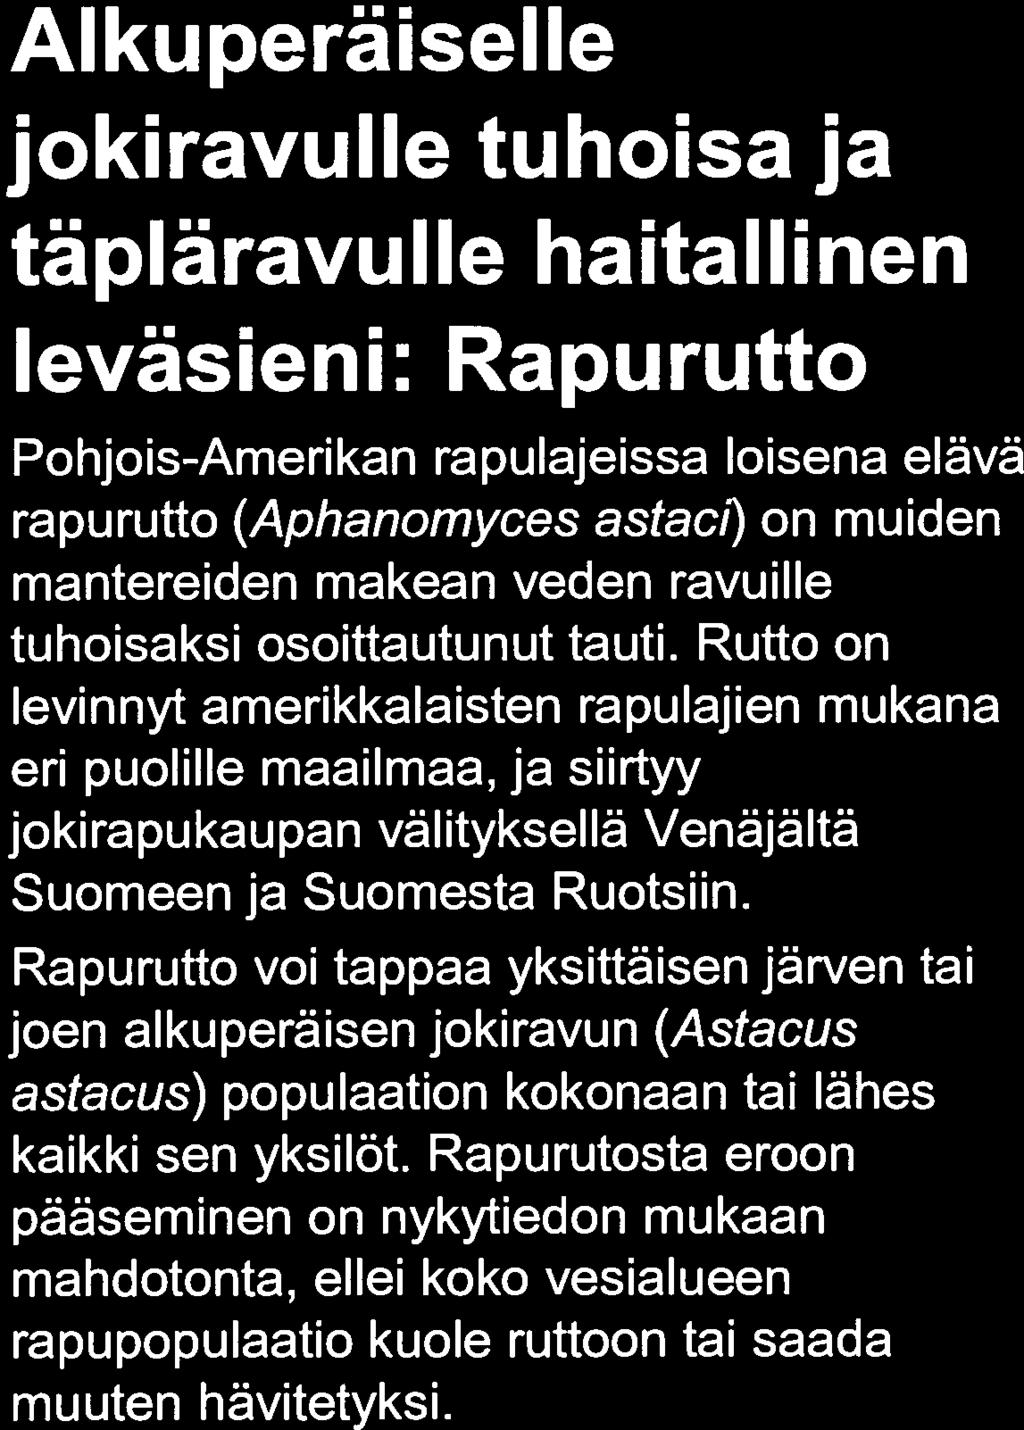 jv; Kuvaaja: Jorma Kirjavainen Alkuperaiselle.